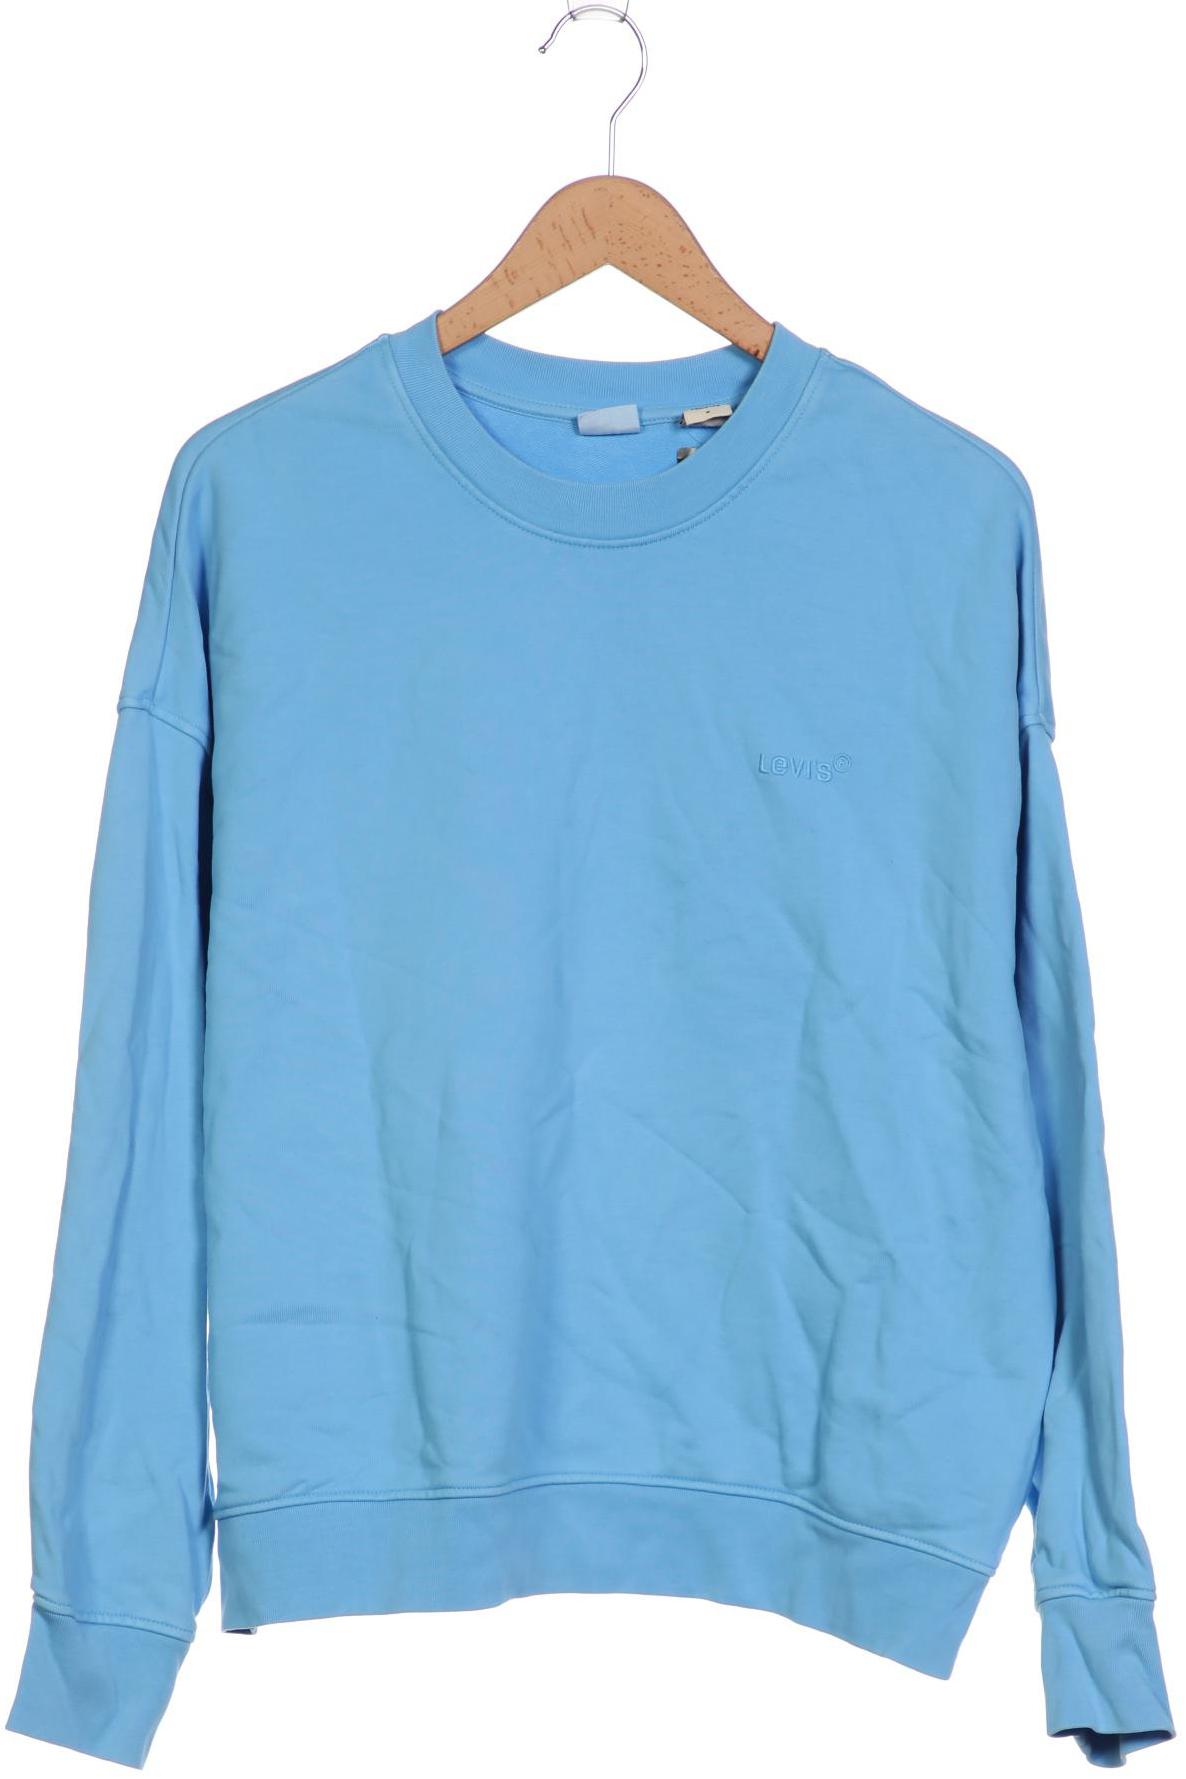 Levis Damen Sweatshirt, blau, Gr. 38 von Levis